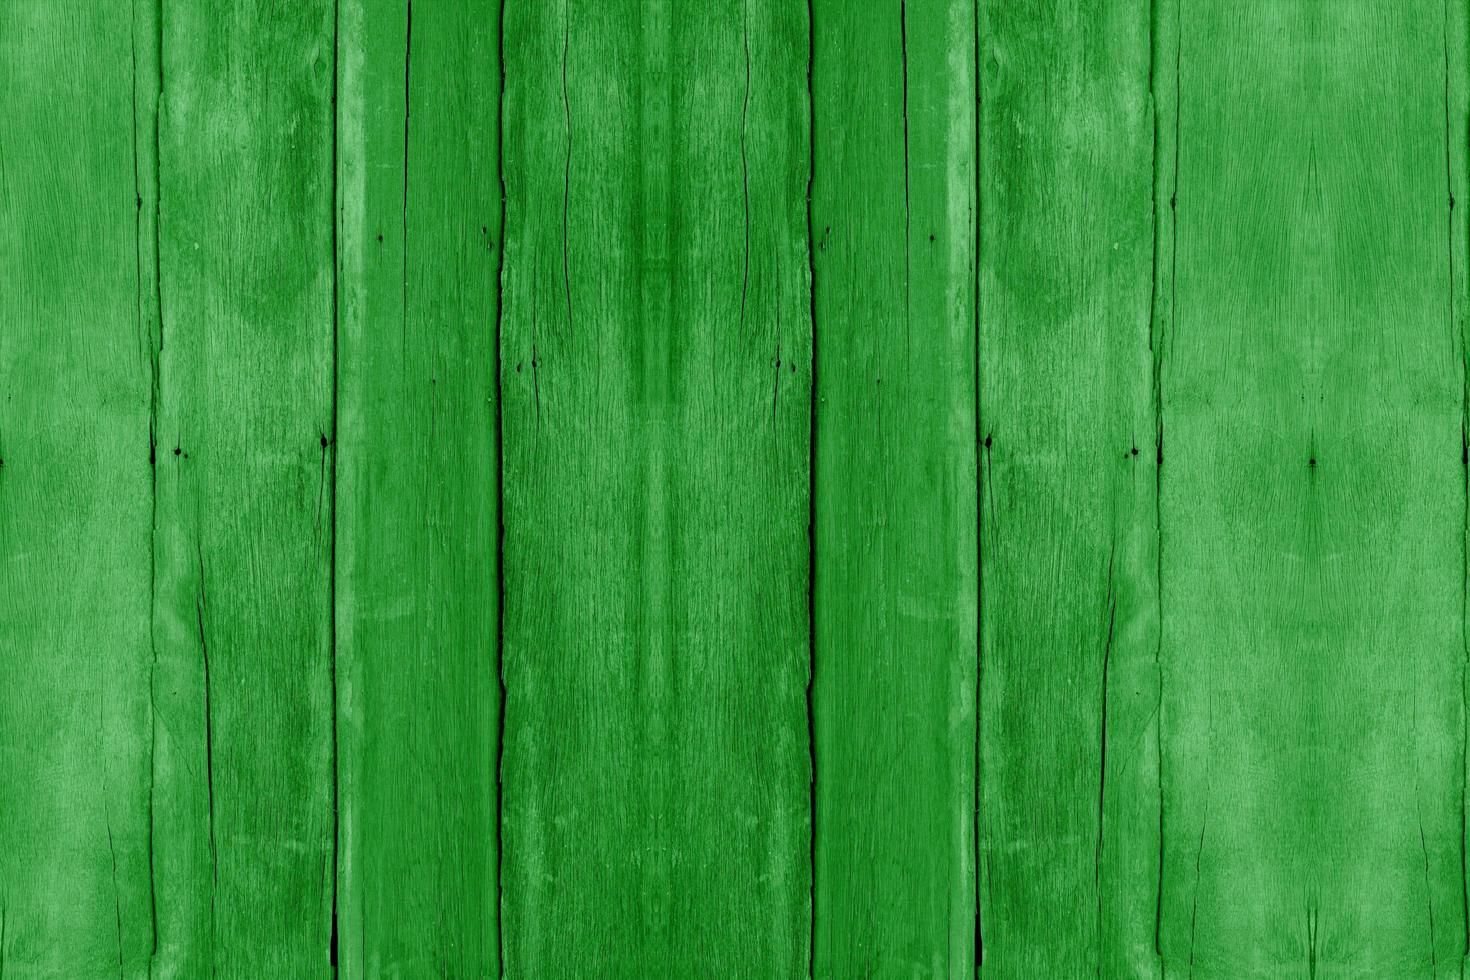 grüne Holzplankenstruktur, abstrakter Hintergrund, Ideengrafikdesign für Webdesign oder Banner foto